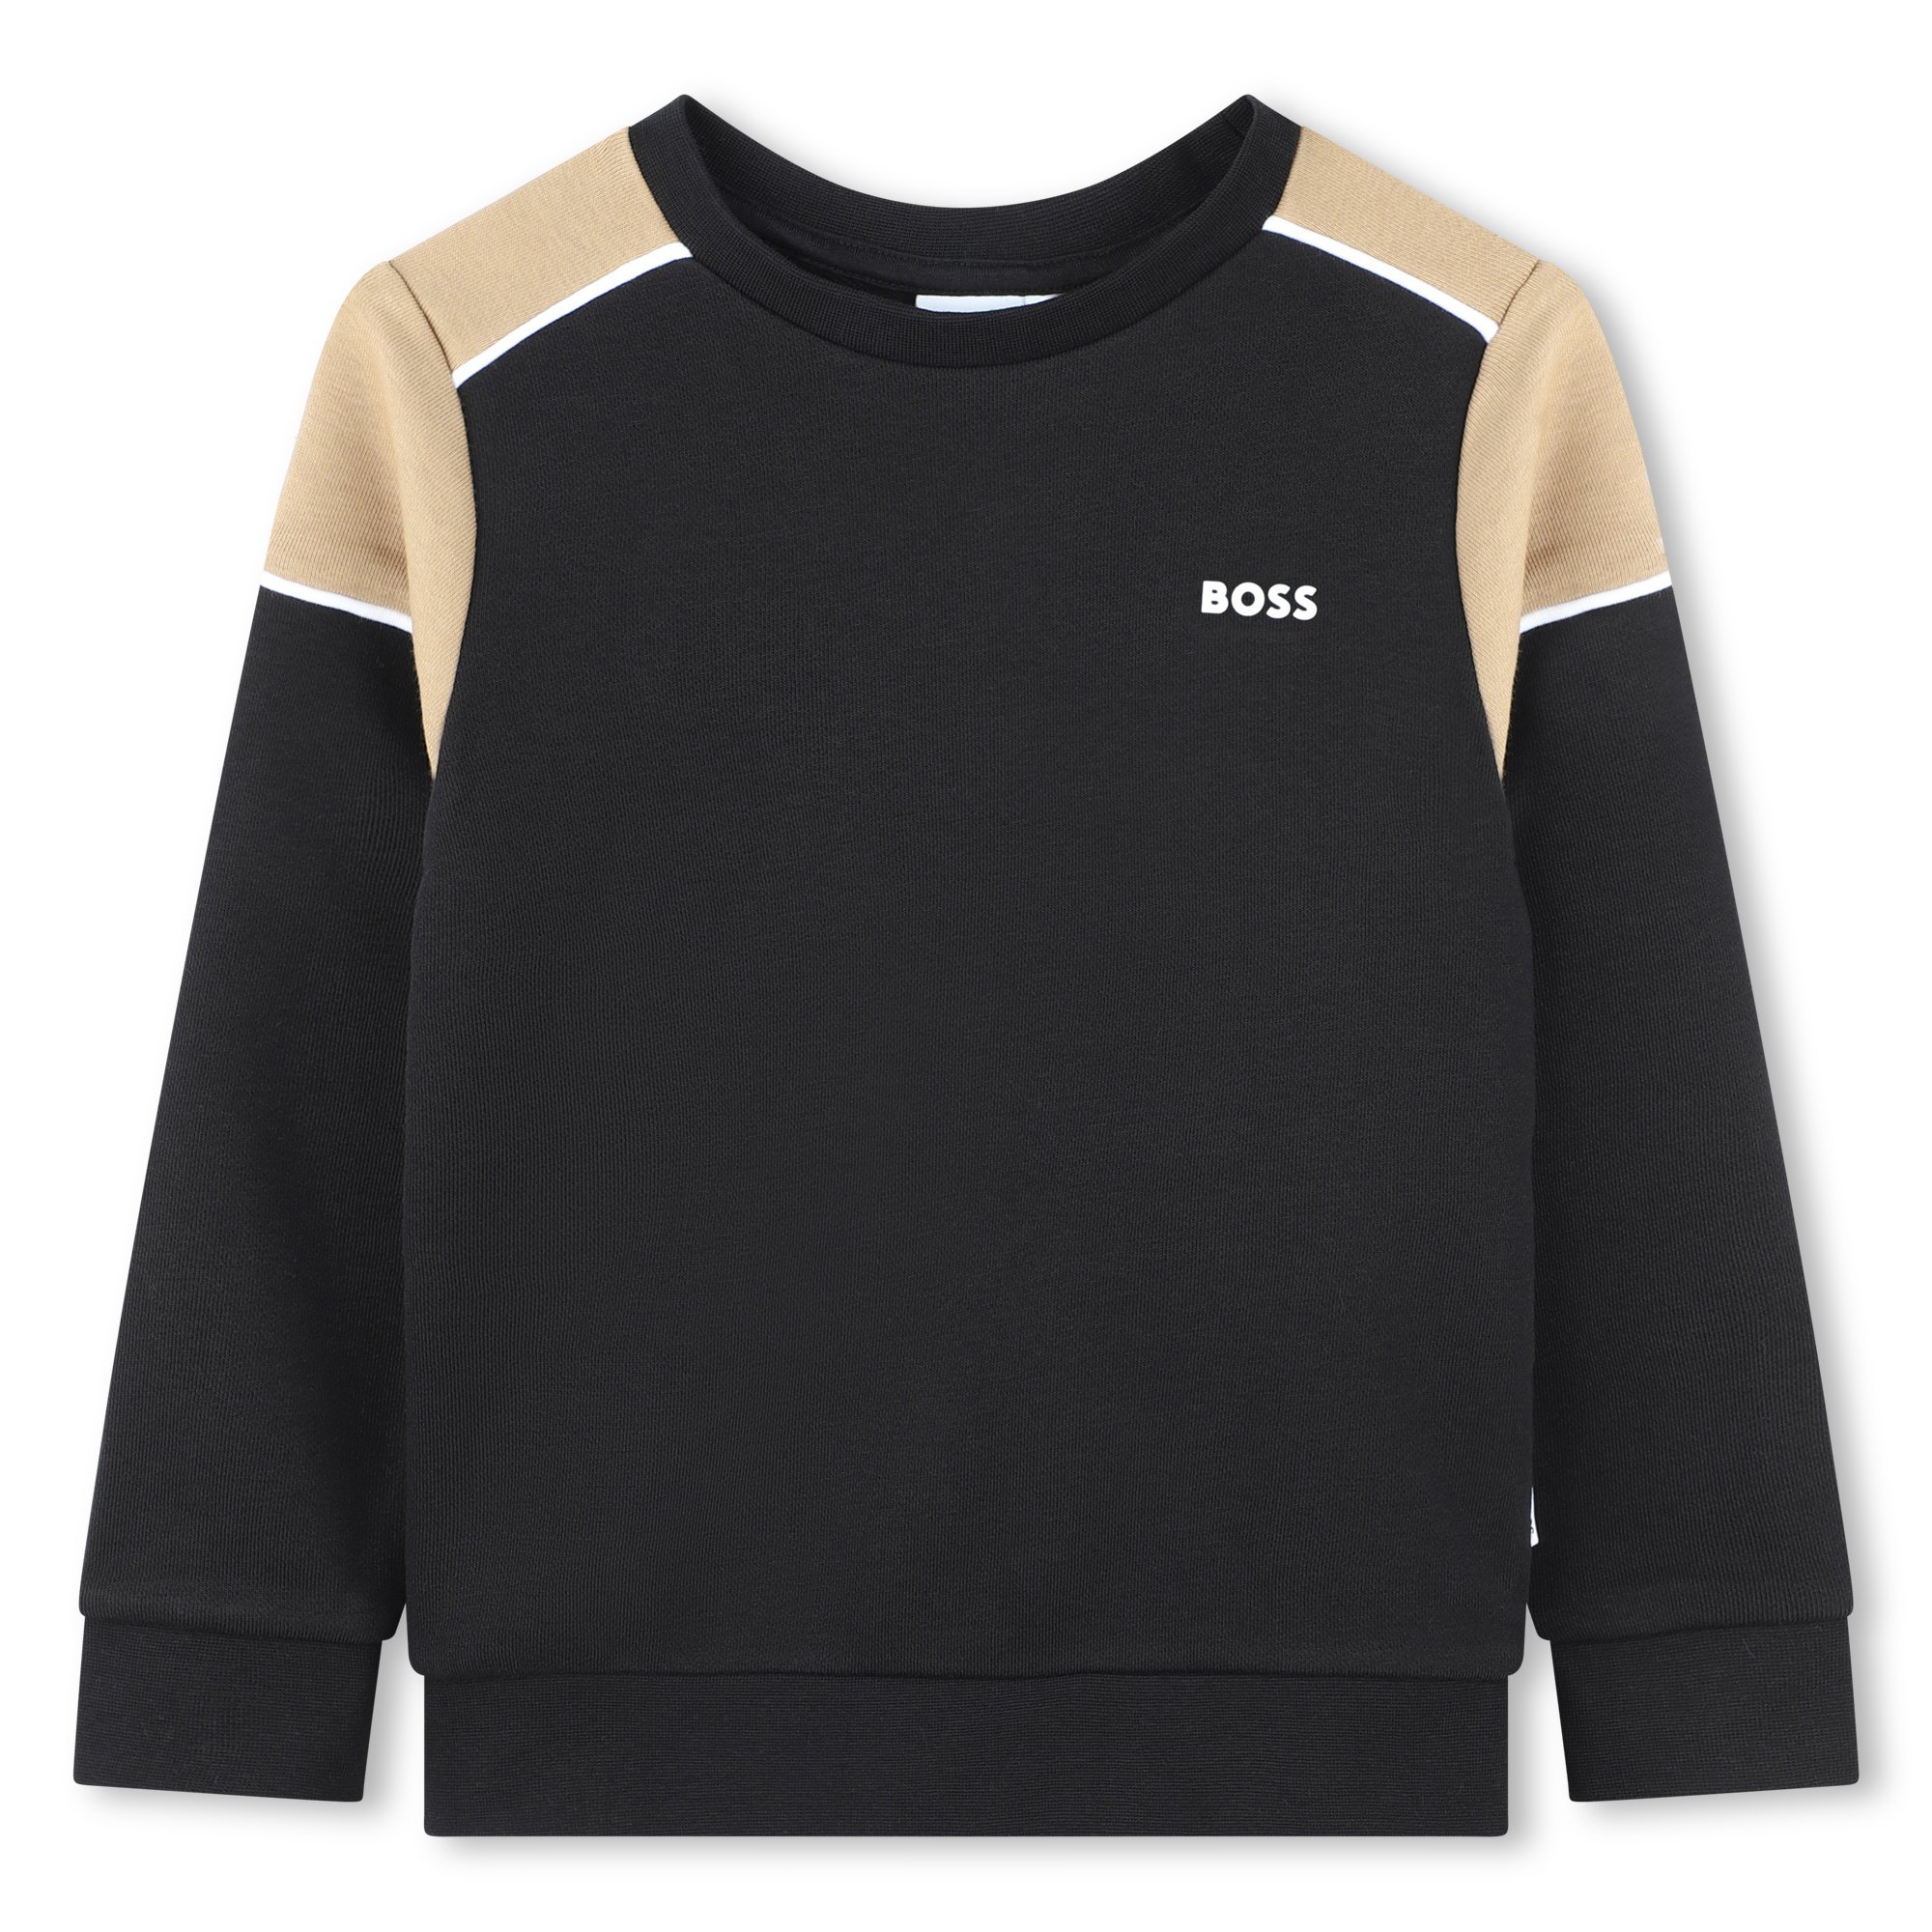 Printed fleece sweatshirt BOSS for BOY